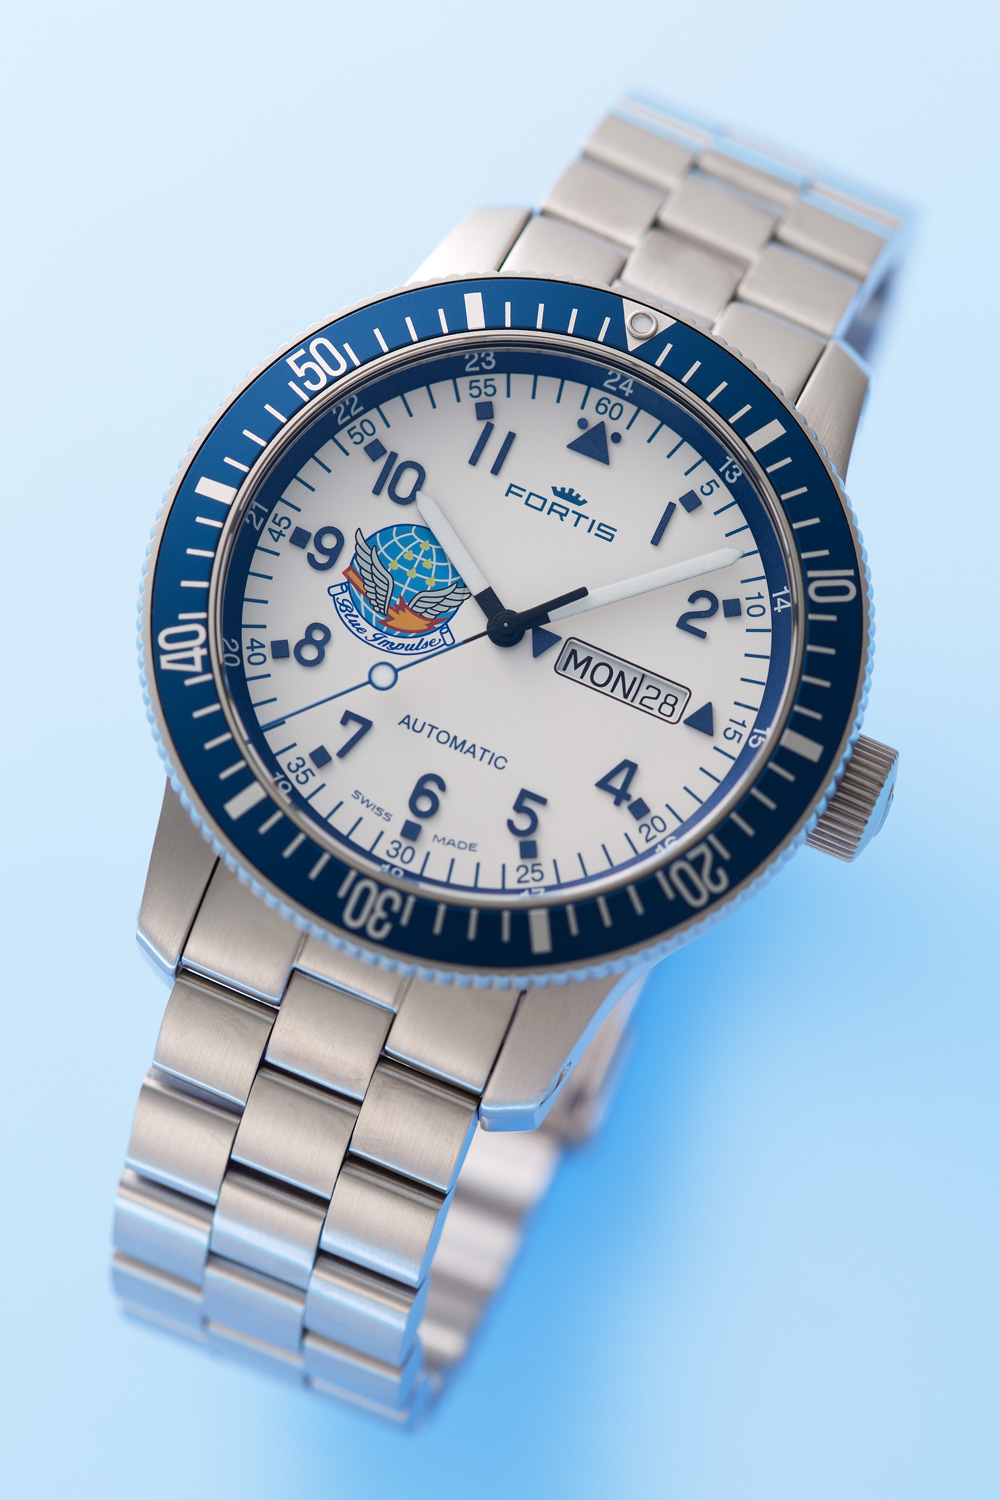 647ブルーインパルス | スイス製腕時計フォルティス公式サイト